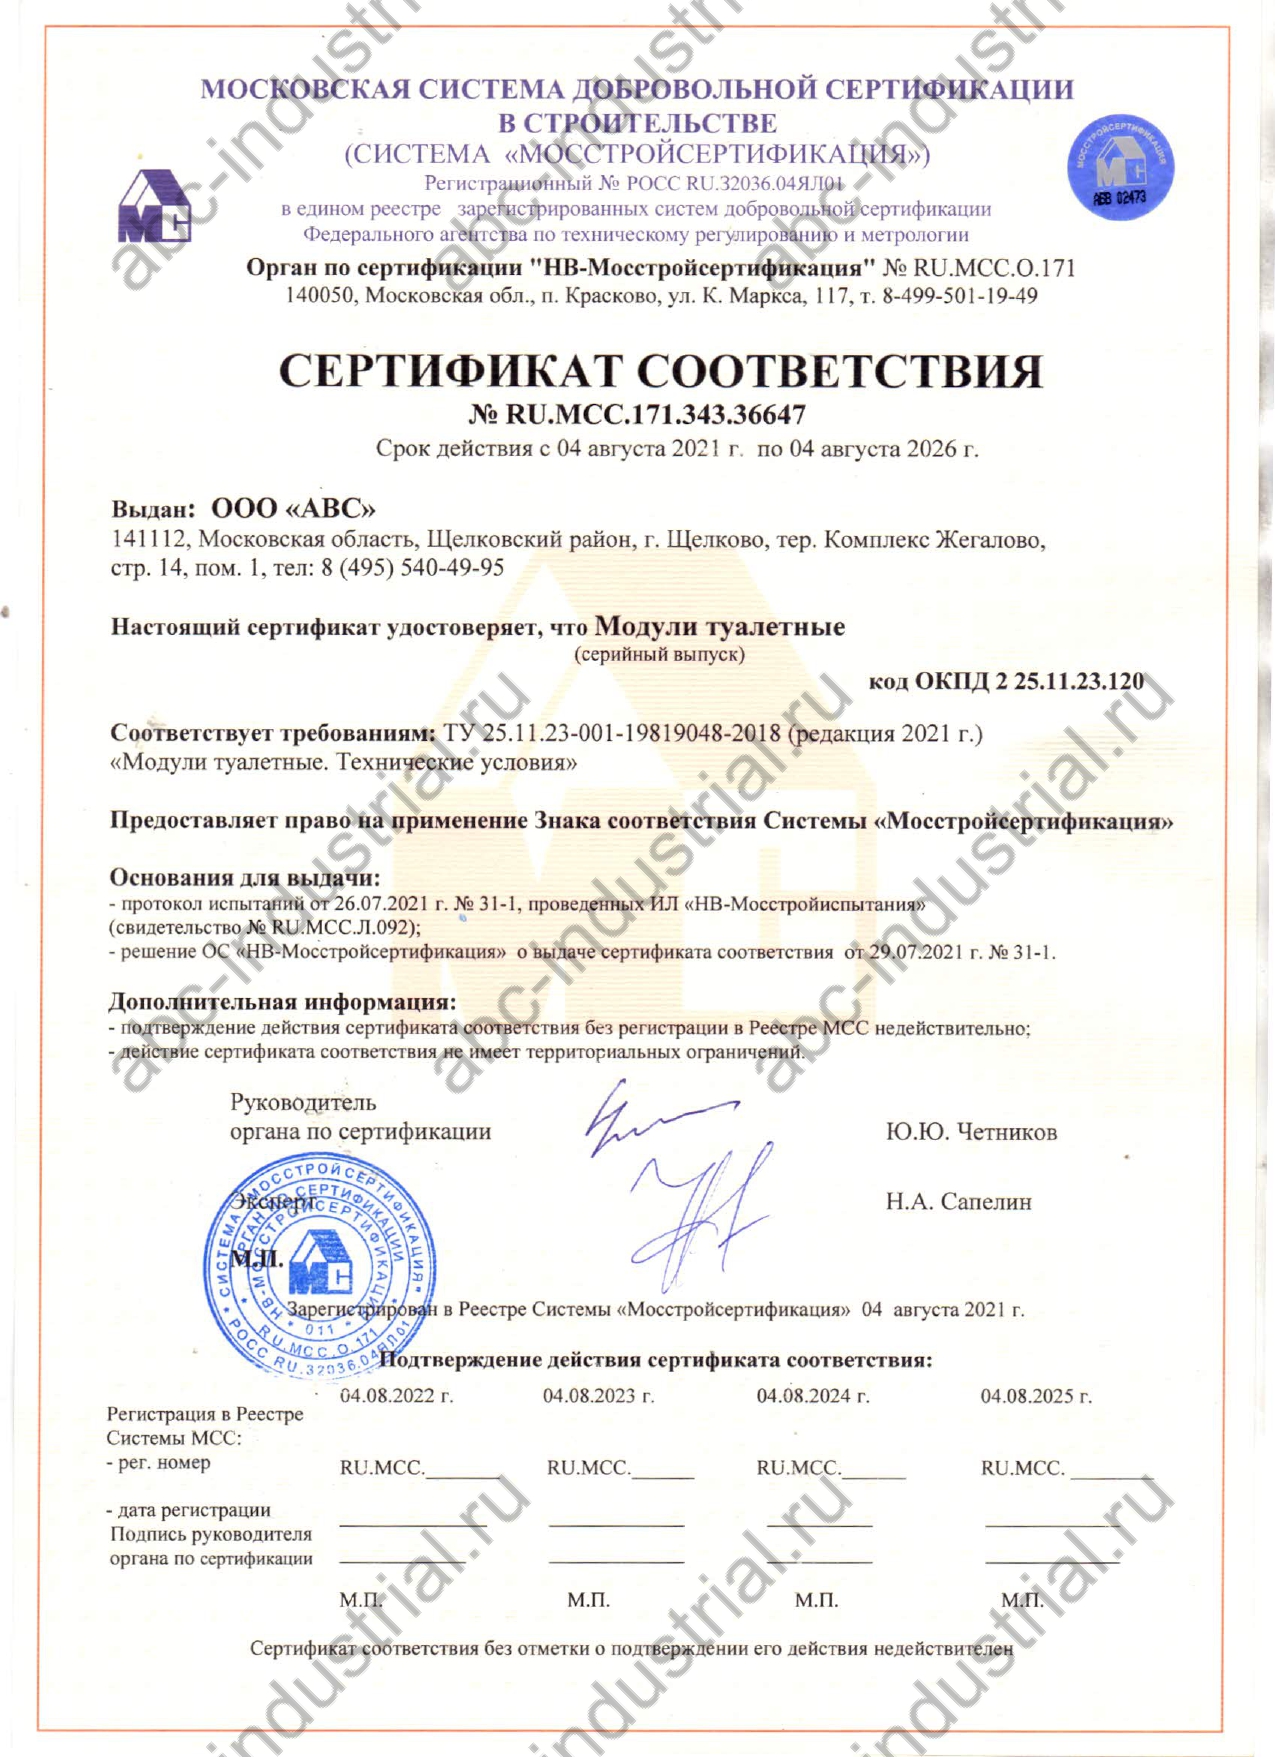 Сертификат соответствия на туалетные модули